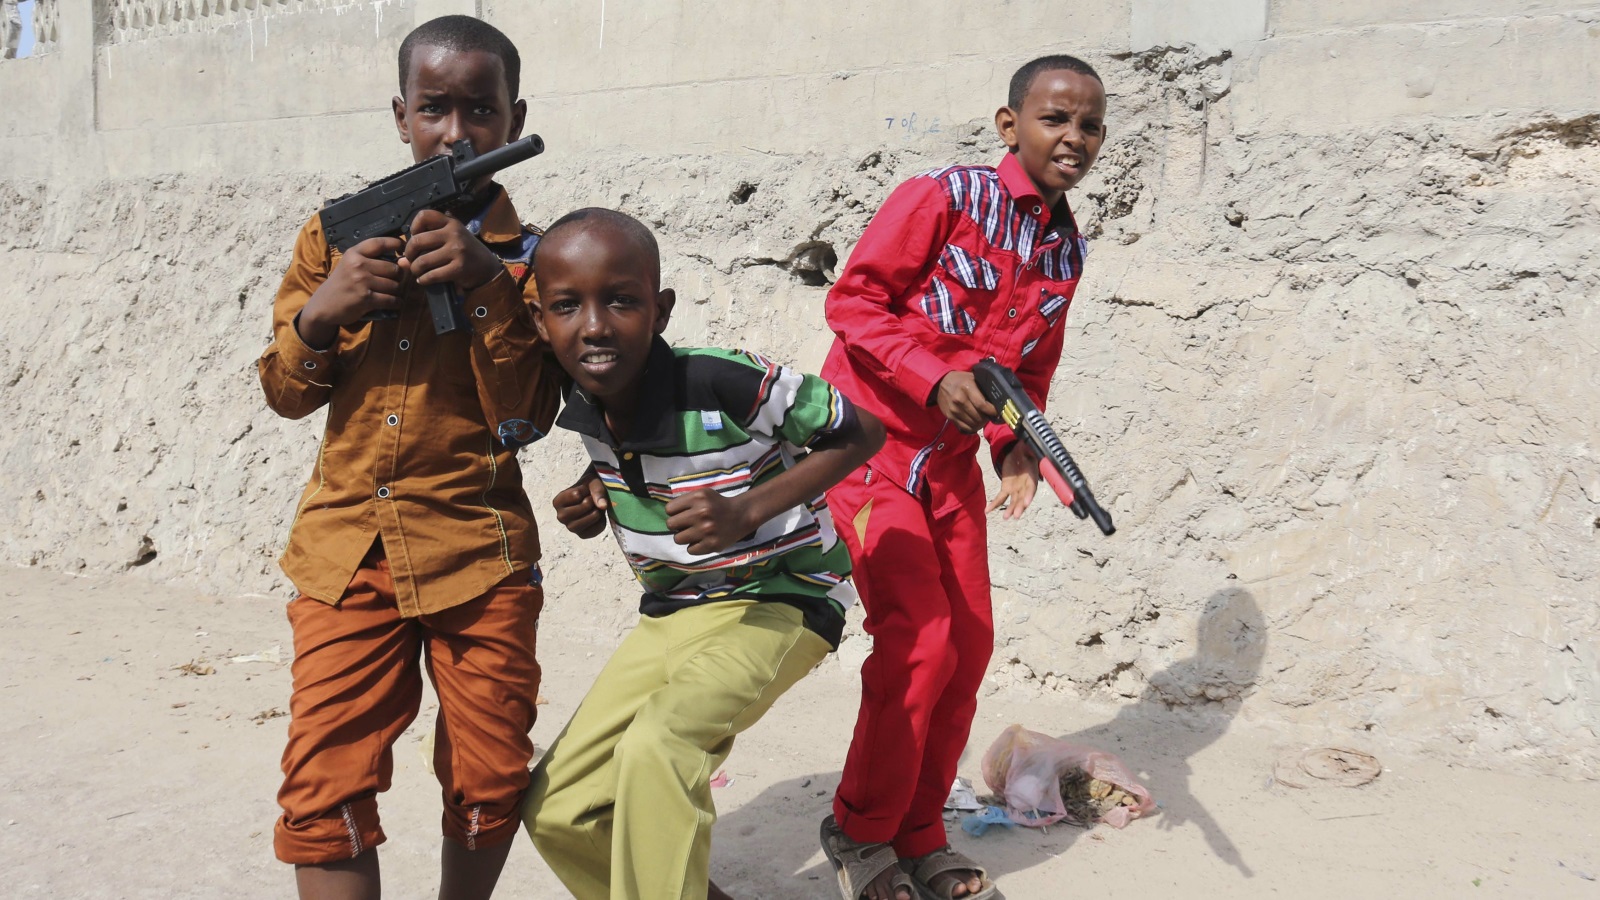 ما يميز الشباب الصومالي التمتع بقدر كبير من الحيوية والنشاط، وهذه دلالة واضحة على رغبة الكثير في إصلاح الواقع قدر المستطاع